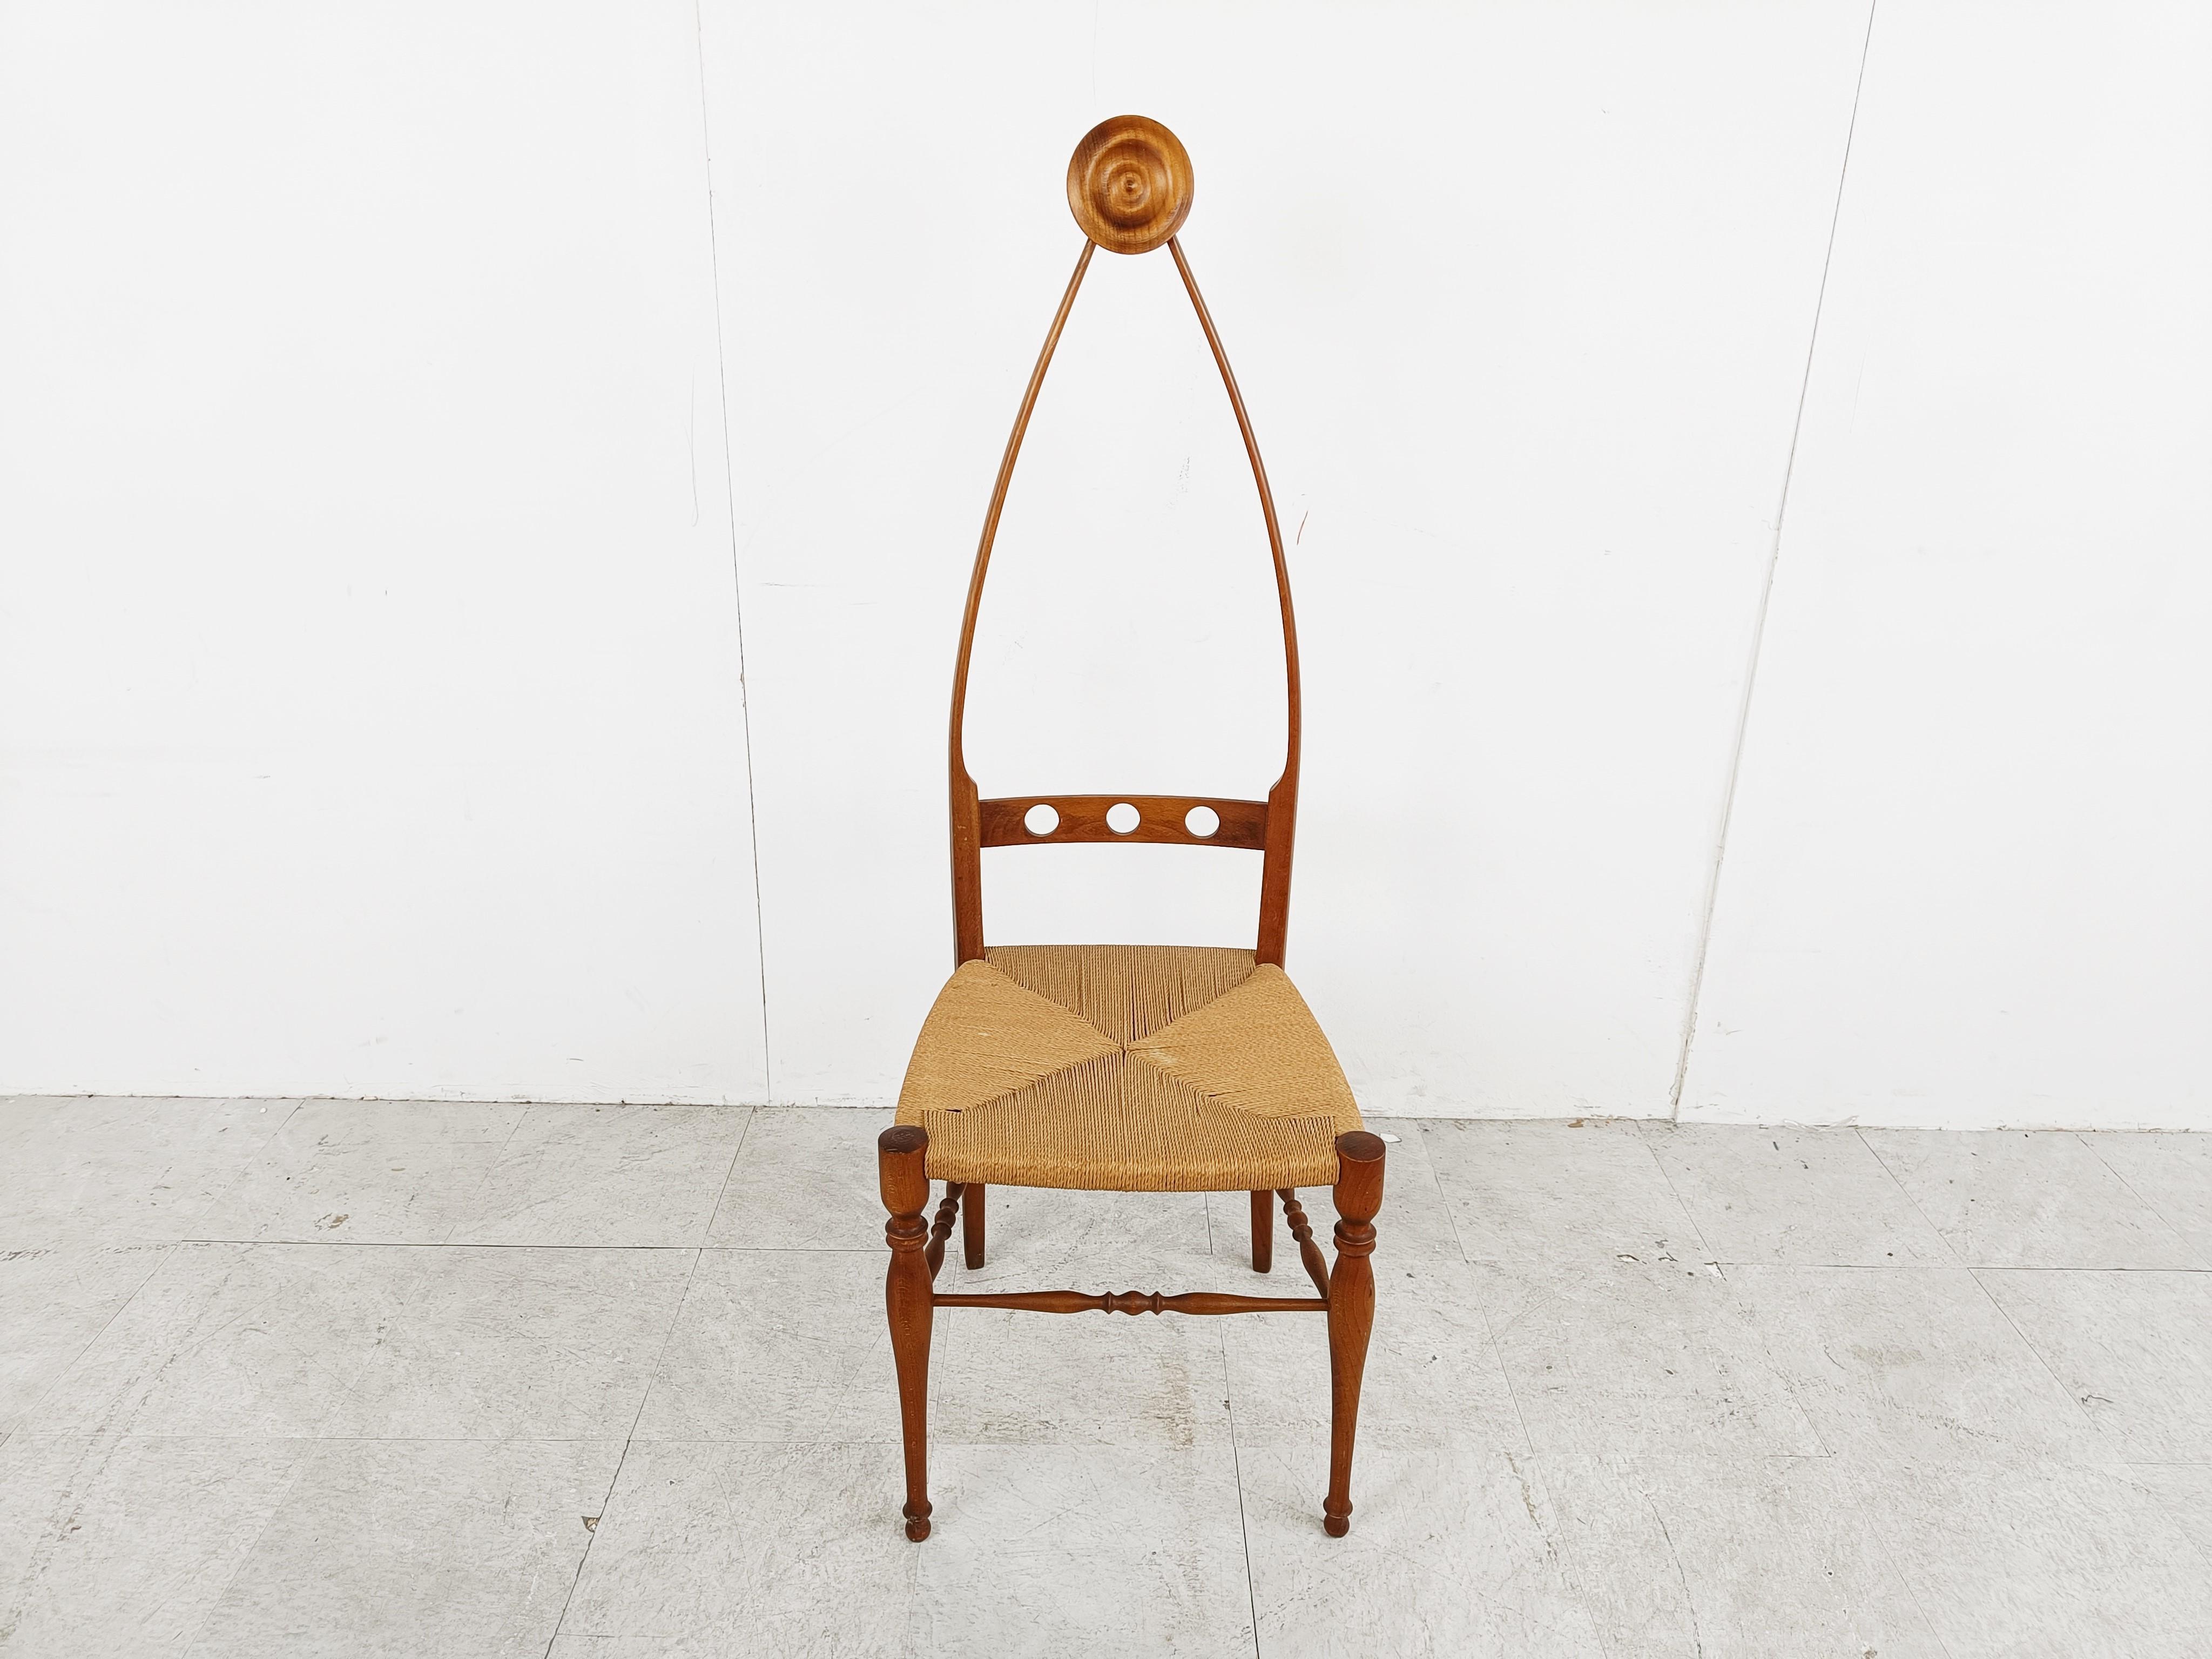 Wunderschön gearbeiteter skulpturaler Stuhl mit hoher Rückenlehne von Pozzi & Varga.

Das sehr feine und elegante Gestell ist aus Nussbaumholz und der Stuhl aus Papierkordel.

Beachten Sie die herrlichen Kurven und Details am Rahmen. 

Sehr